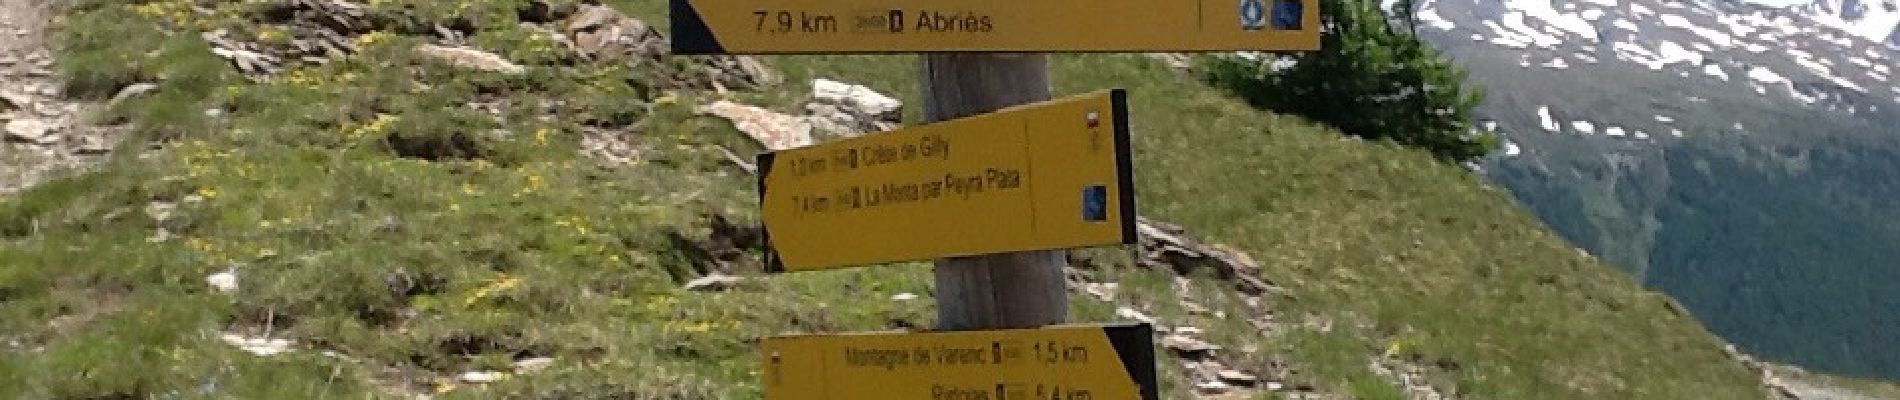 Tour Wandern Abriès-Ristolas - Valpréveyre-col d'urine-colinette Gilly 20160629 - Photo